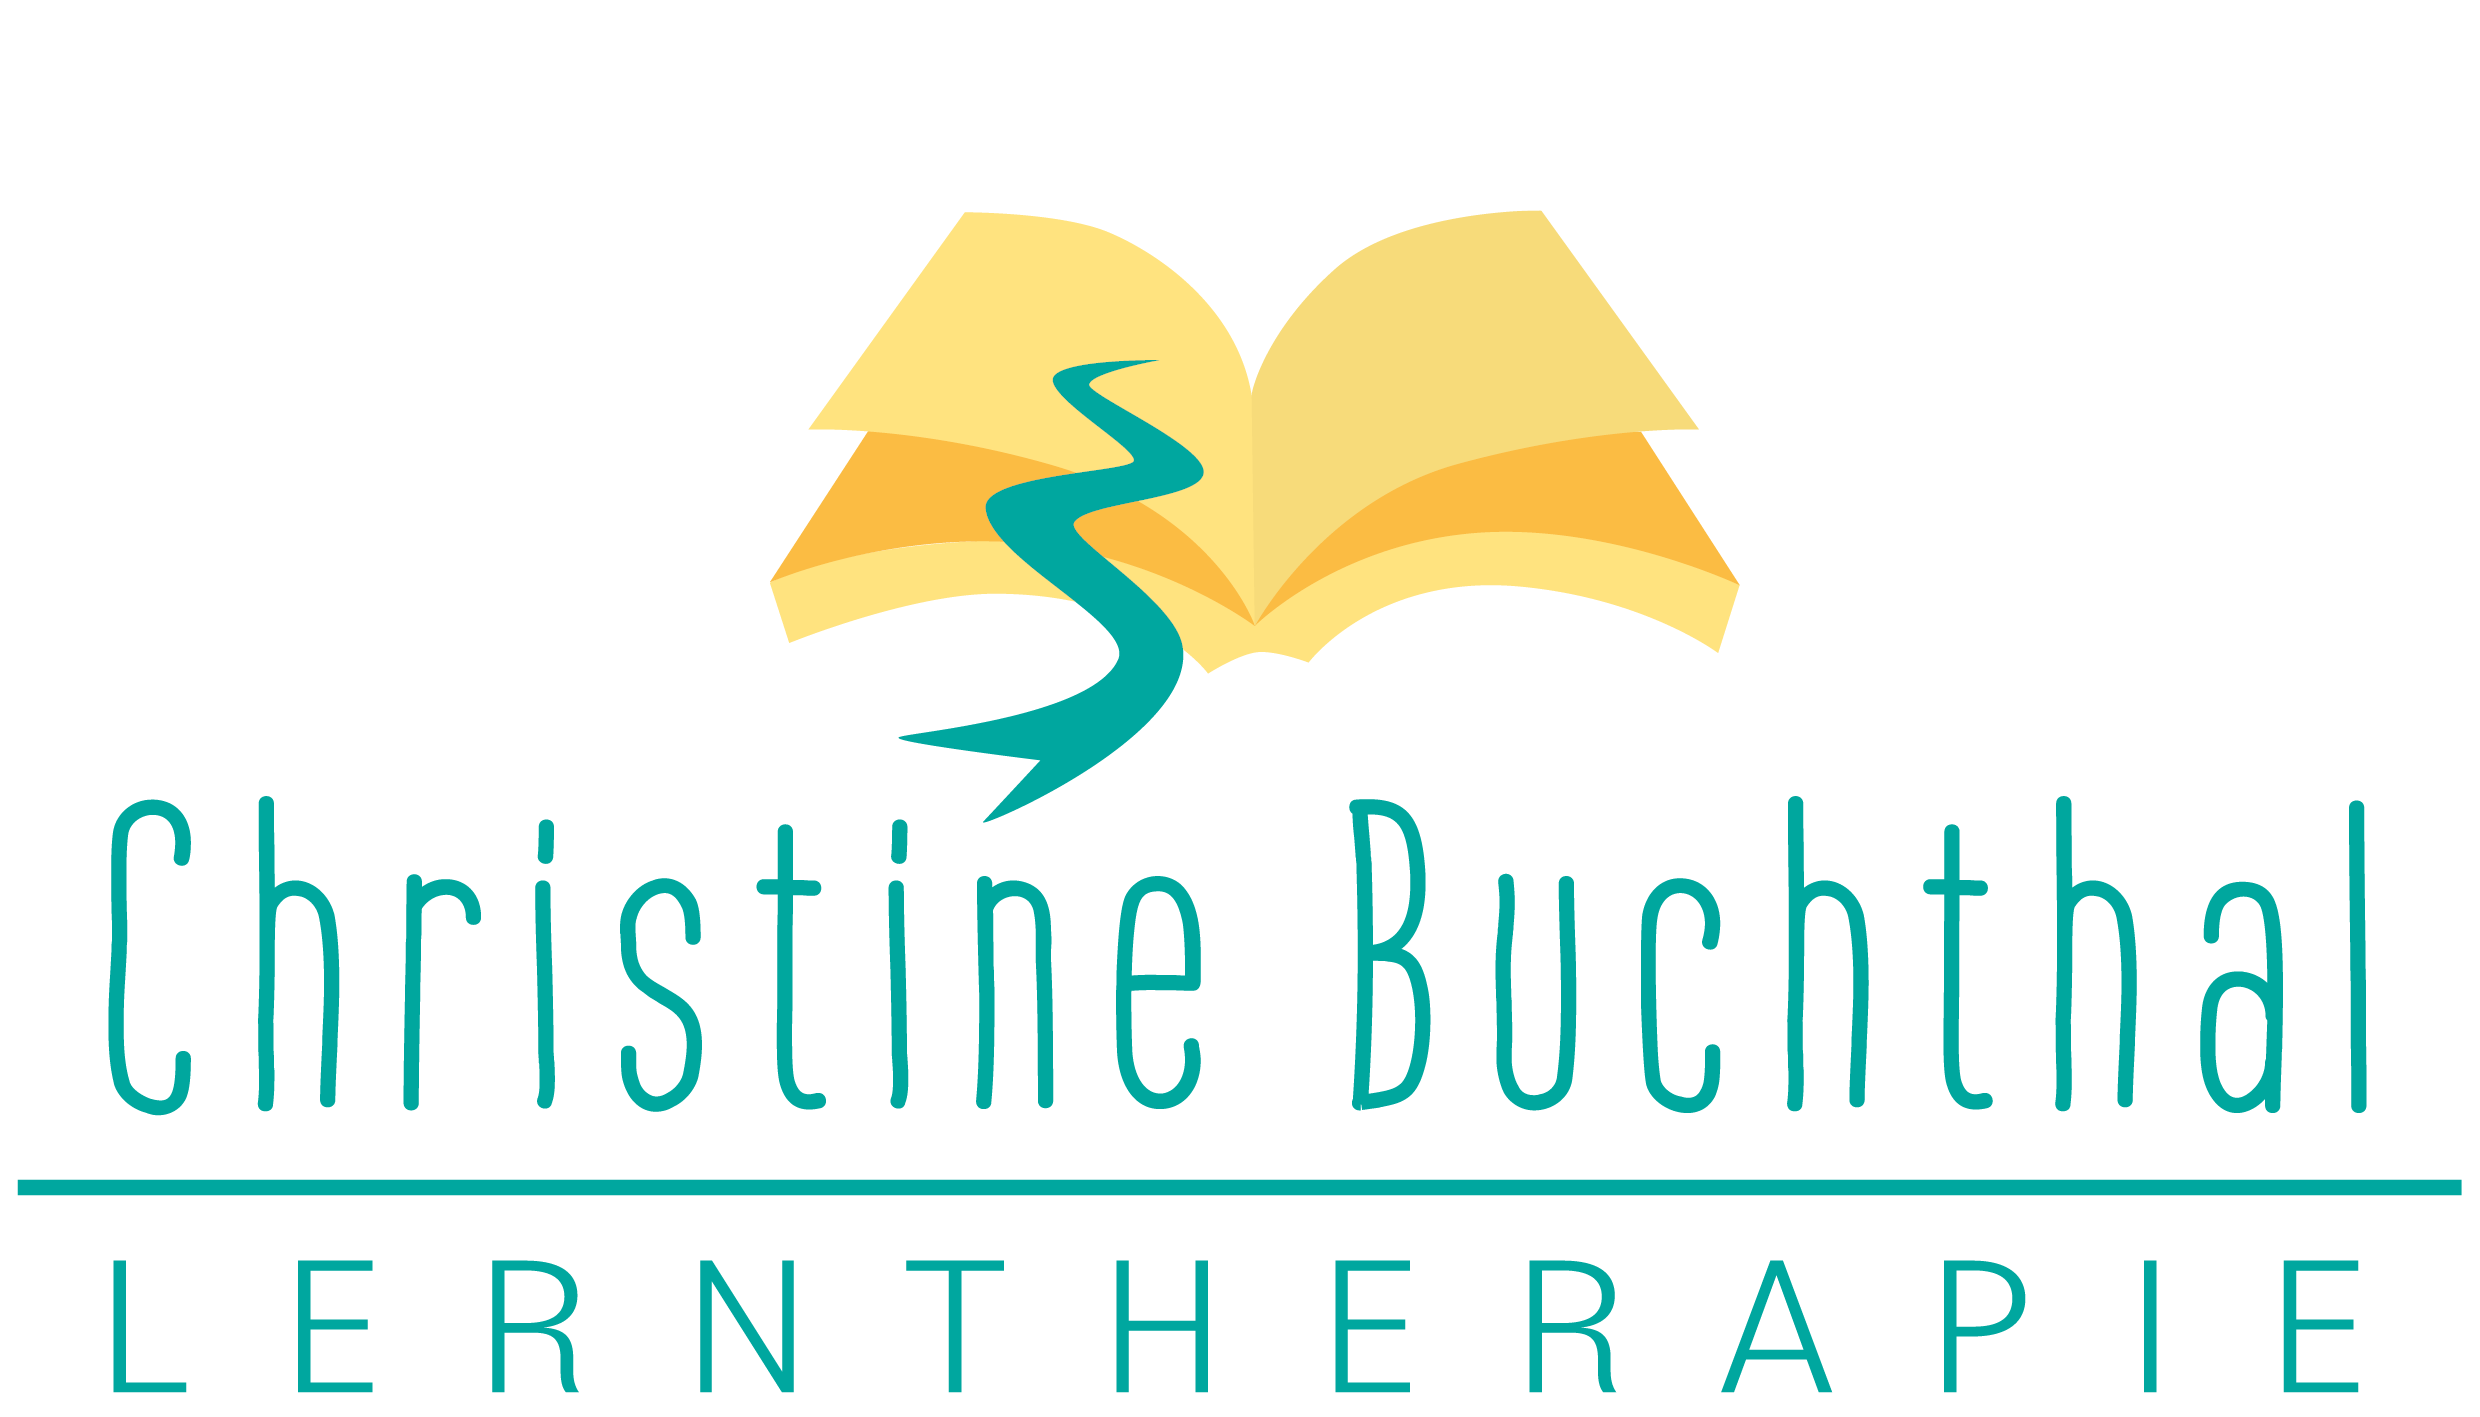 Lerntherapie Buchthal